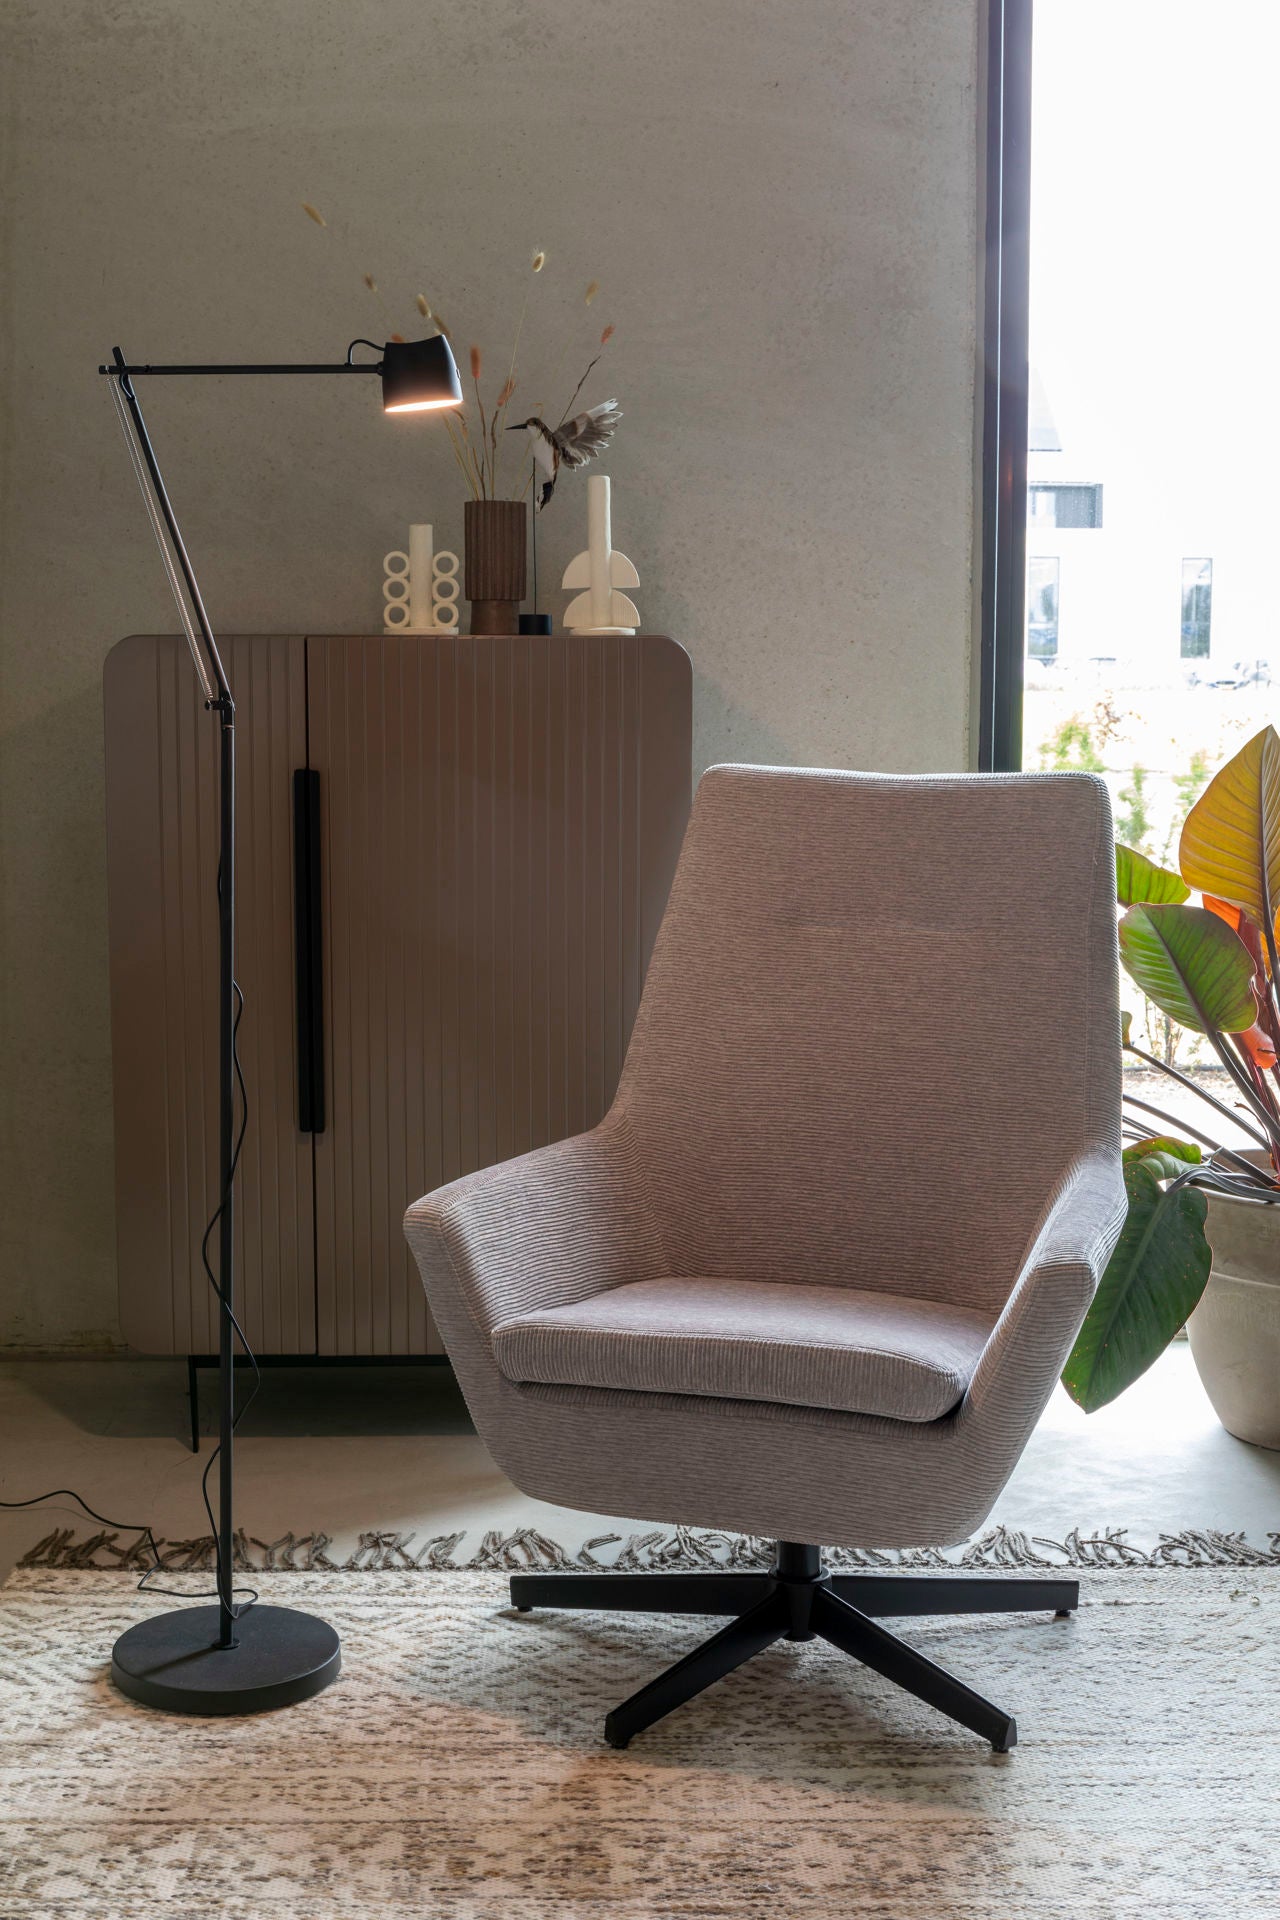 Nancy's Beachwood Lounge Chair - Industriel - Gris clair - Polyester, Contreplaqué, Fer - 79 cm x 76 cm x 98 cm